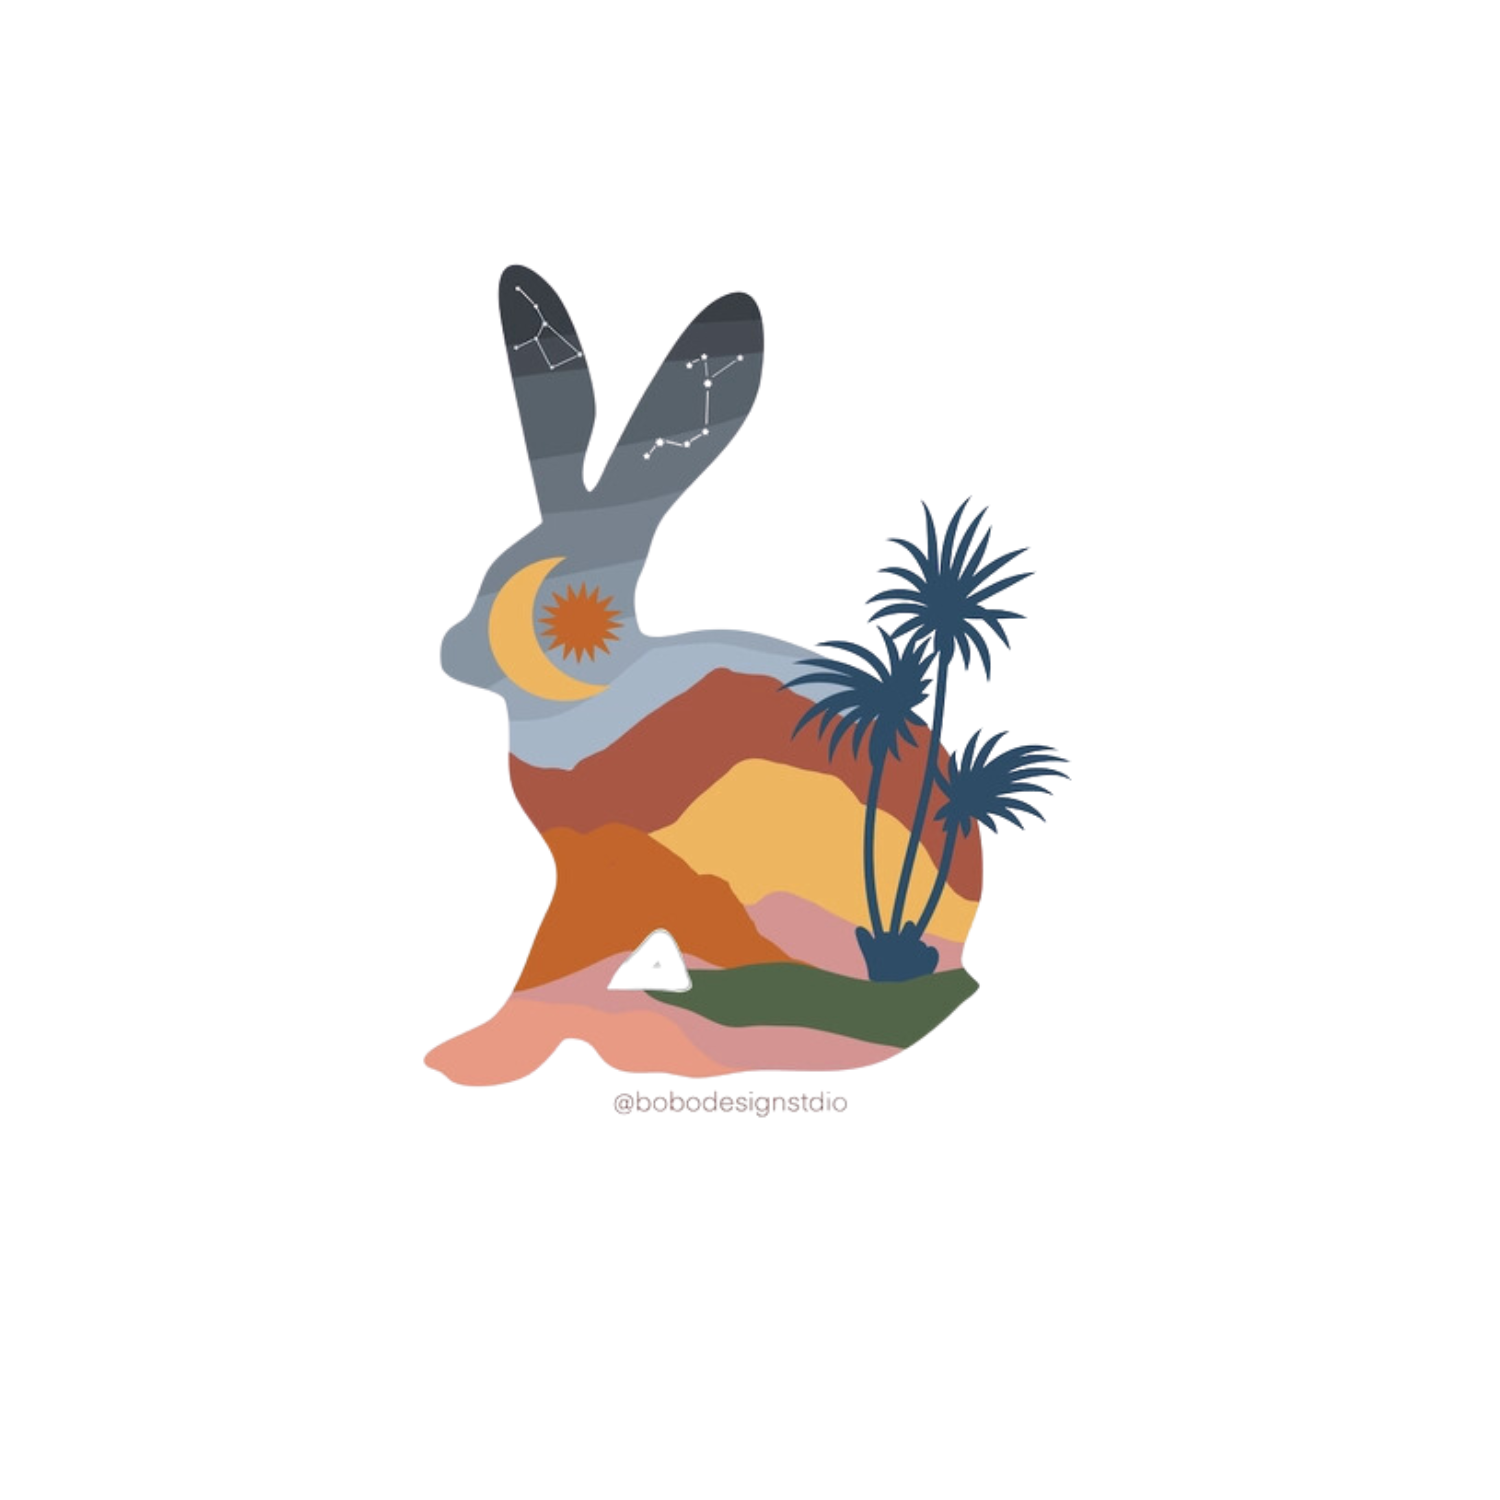 Die cut bunny sticker with desert landscape design